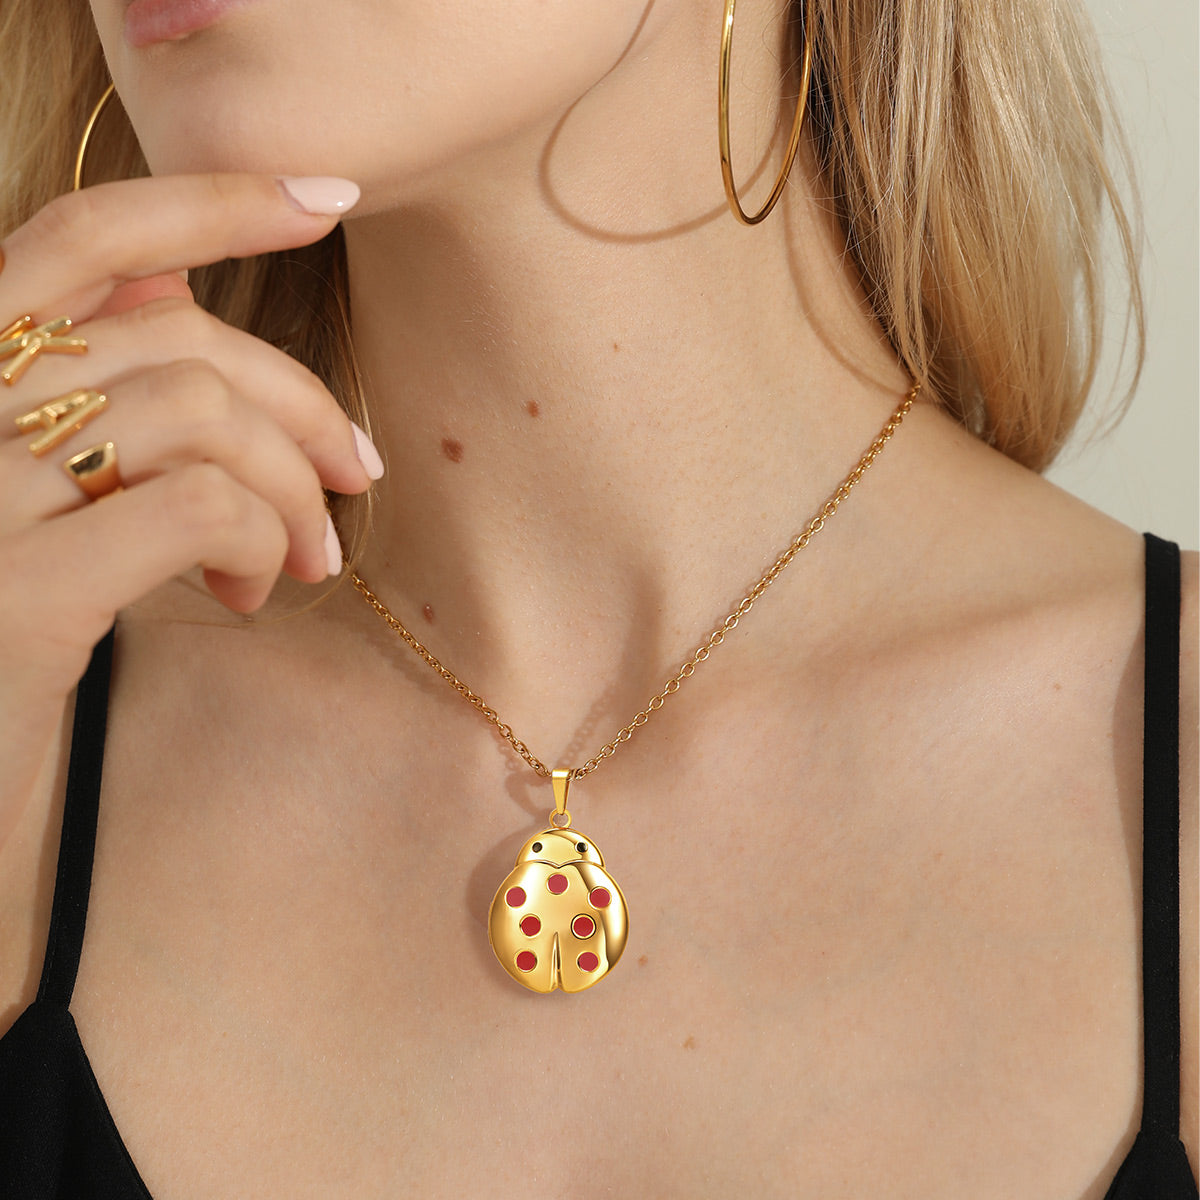 Ladybug Enamel Pendant Necklace Real 14K Yellow Gold | eBay